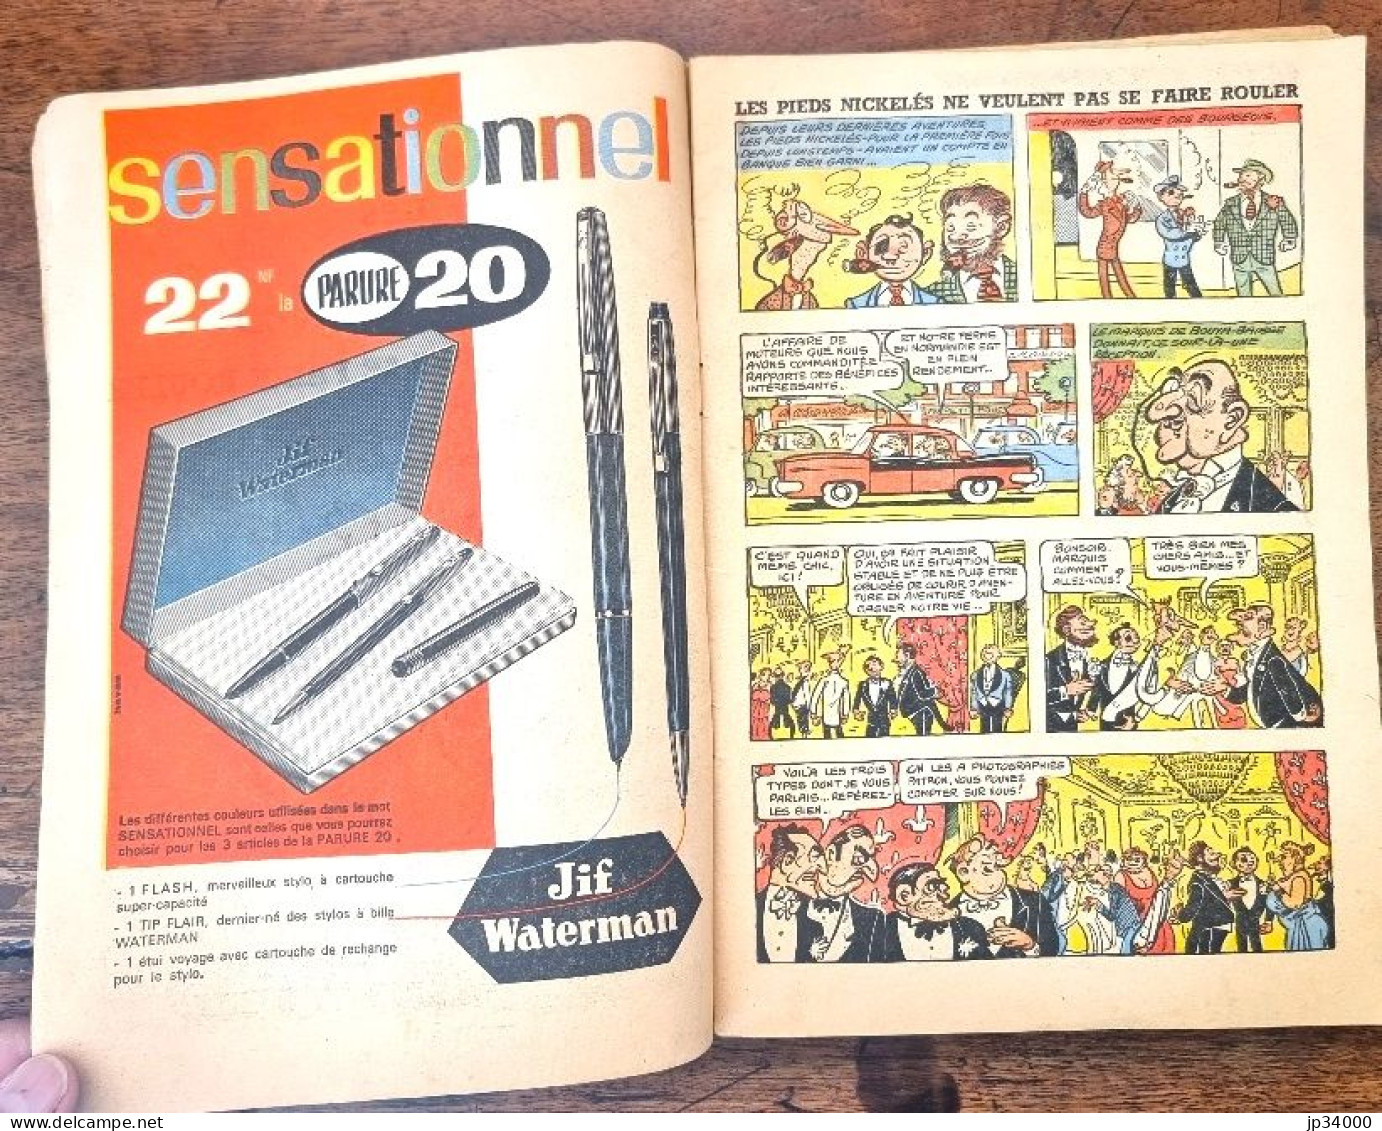 Les Pieds Nickelés Ne Veulent Pas Se Faire Rouler N°38. SPE Edition 1963. Pellos - Pieds Nickelés, Les